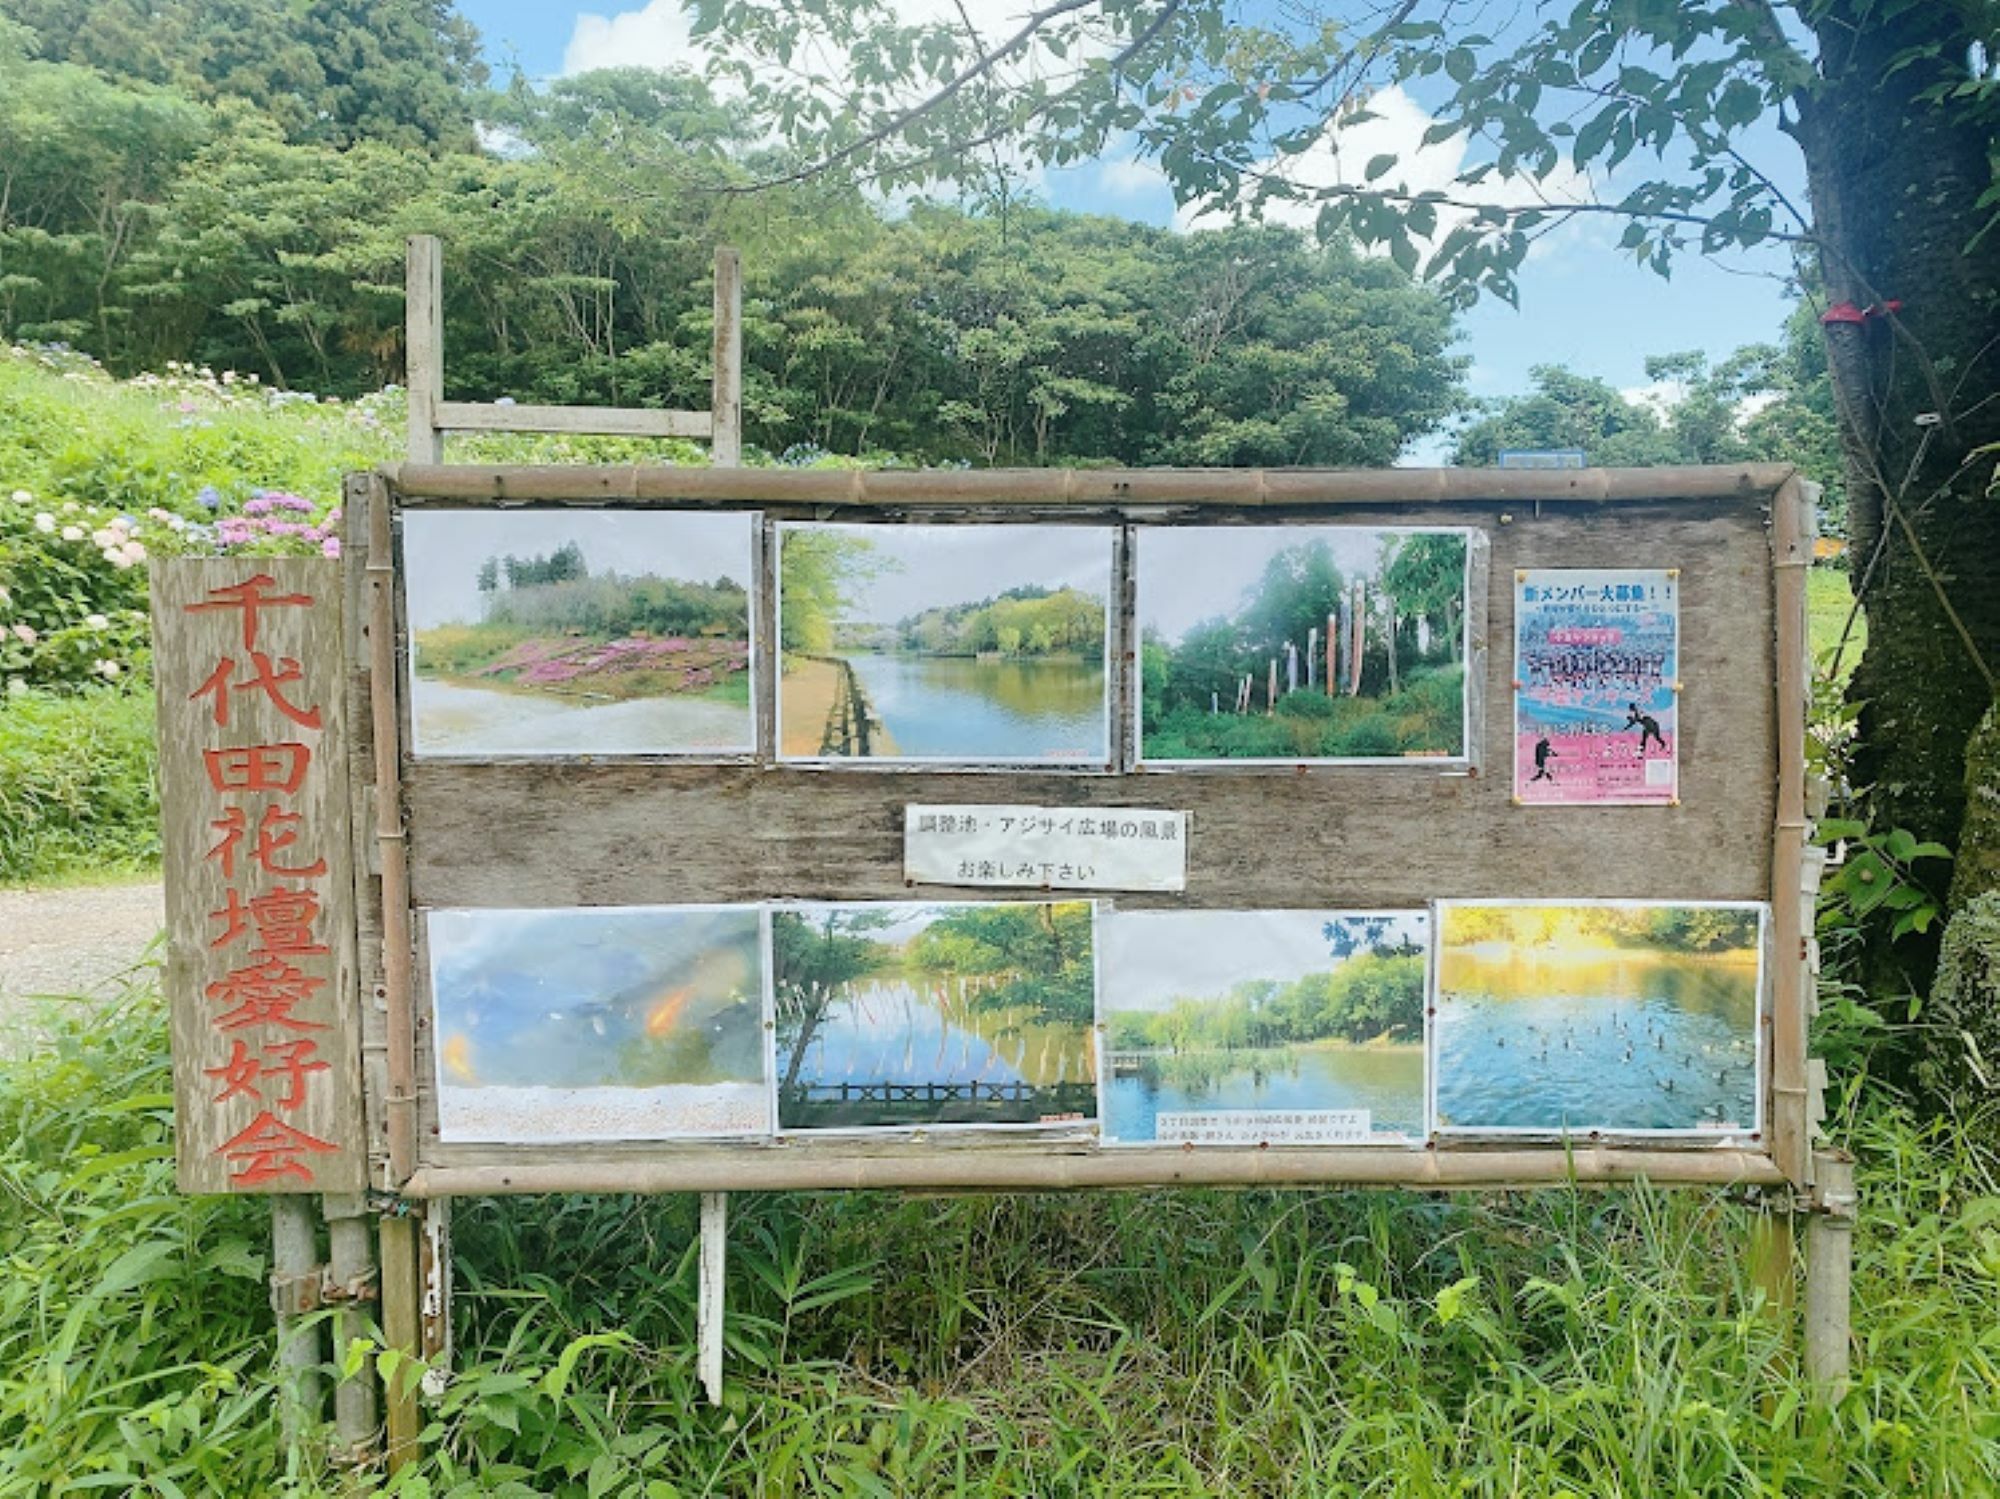 千代田調整池を撮影した写真の数々。